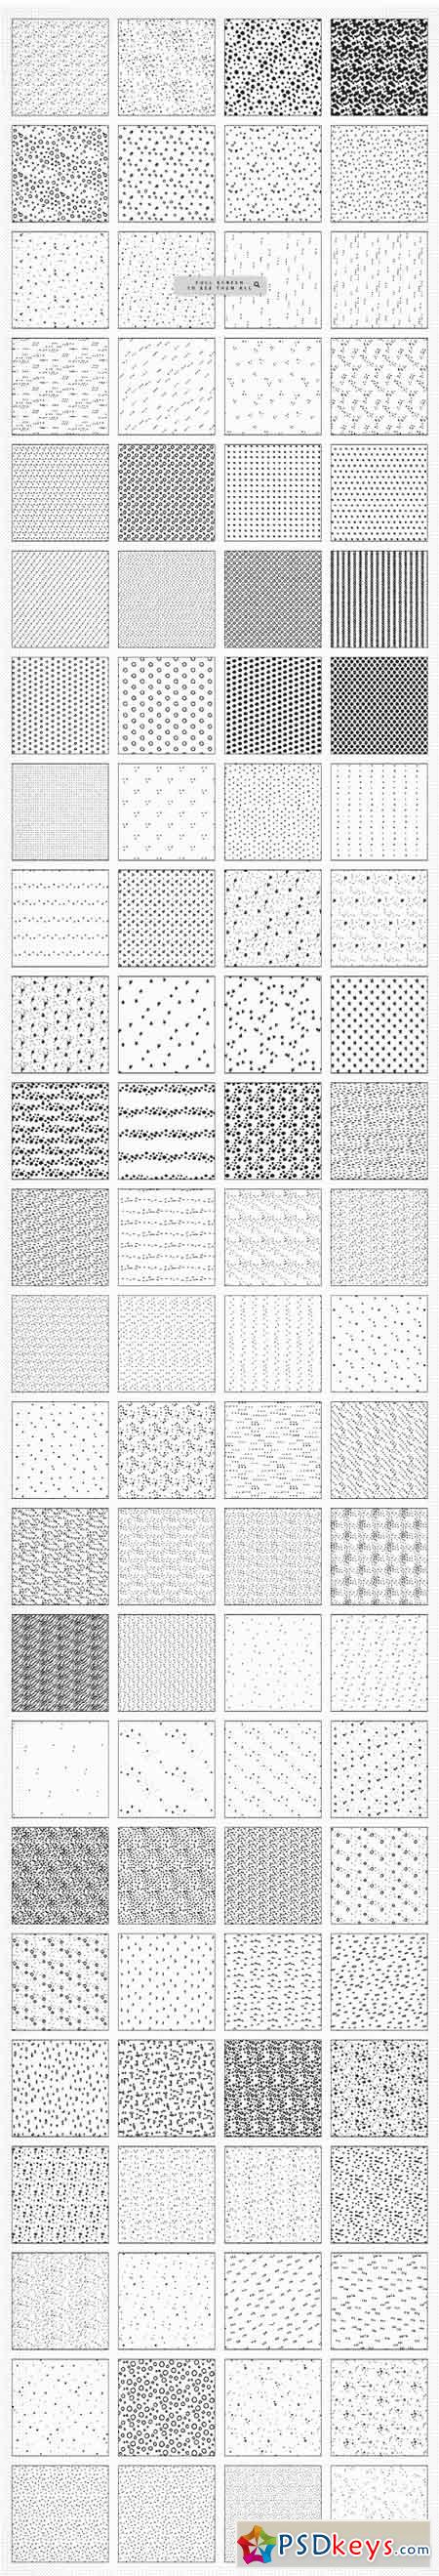 Unicorn Dust Illustrator Patterns 1521962